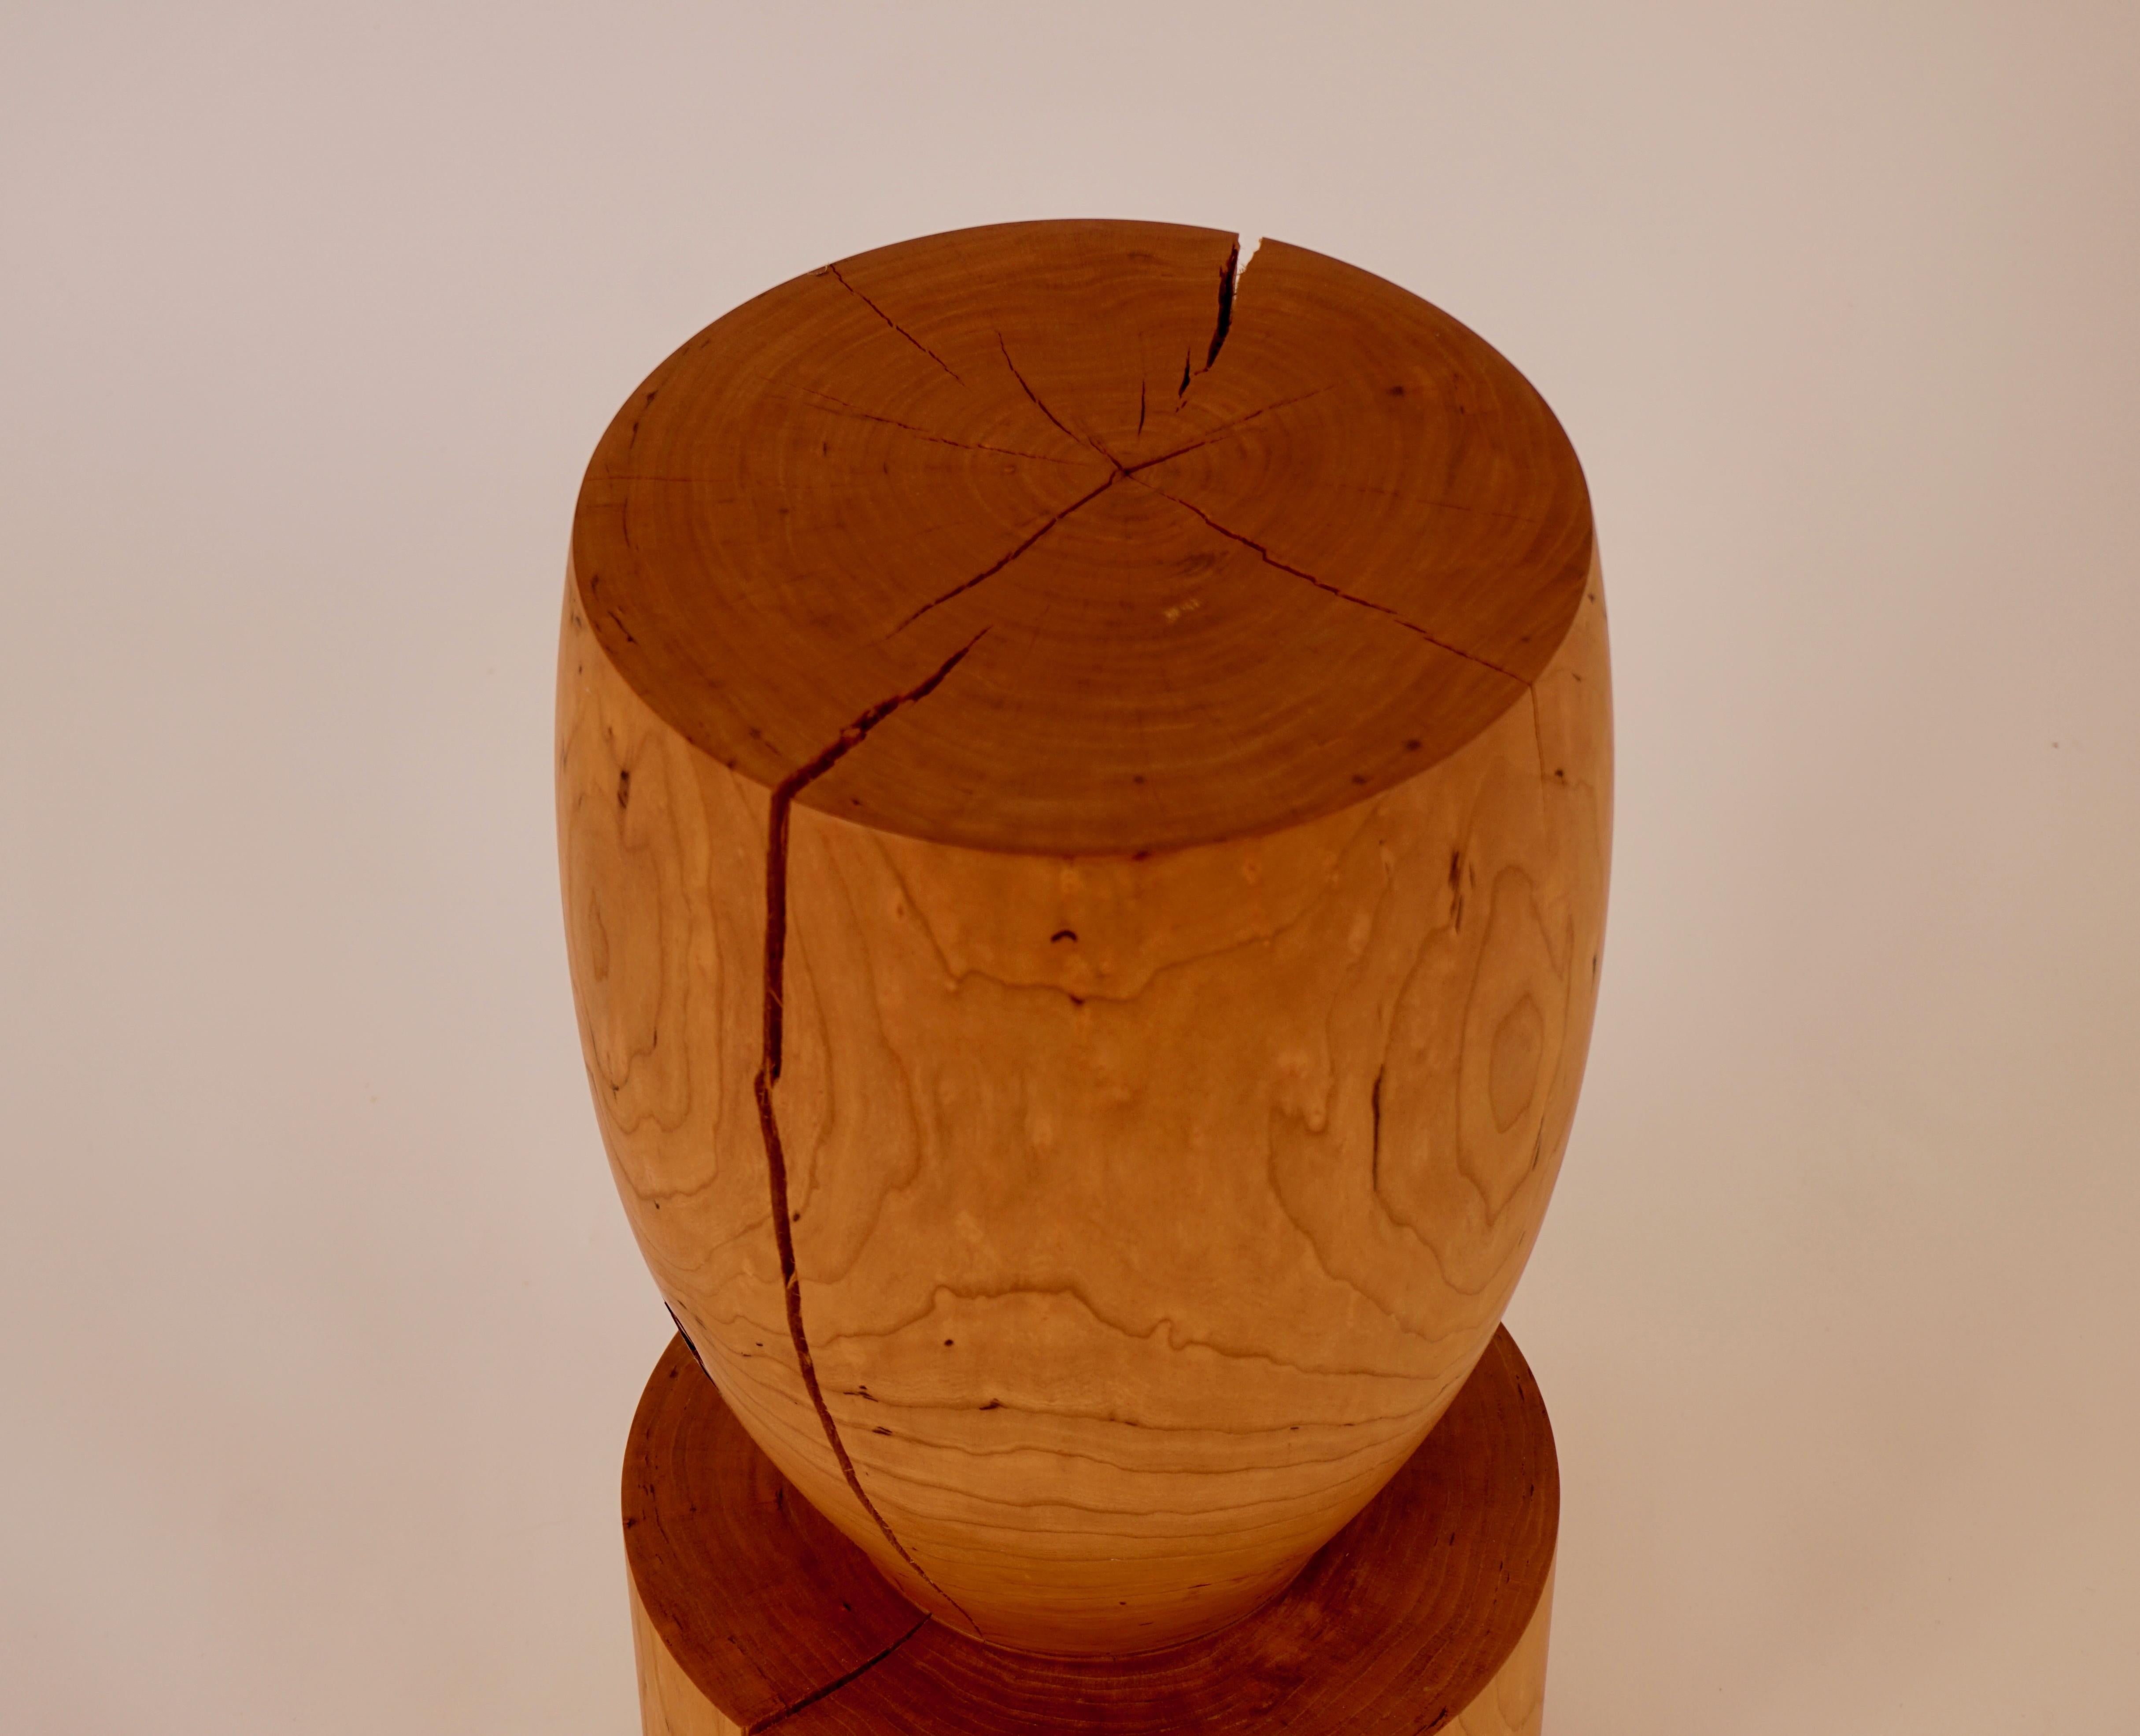 Cette mini table guéridon #3 en cerisier est l'une des dix formes originales de la collection guéridon Lehrecke de 1996. Ce qui rend cette pièce spéciale, c'est la qualité du bois. Le cerisier est un beau bois local. Cette grume était de très haute